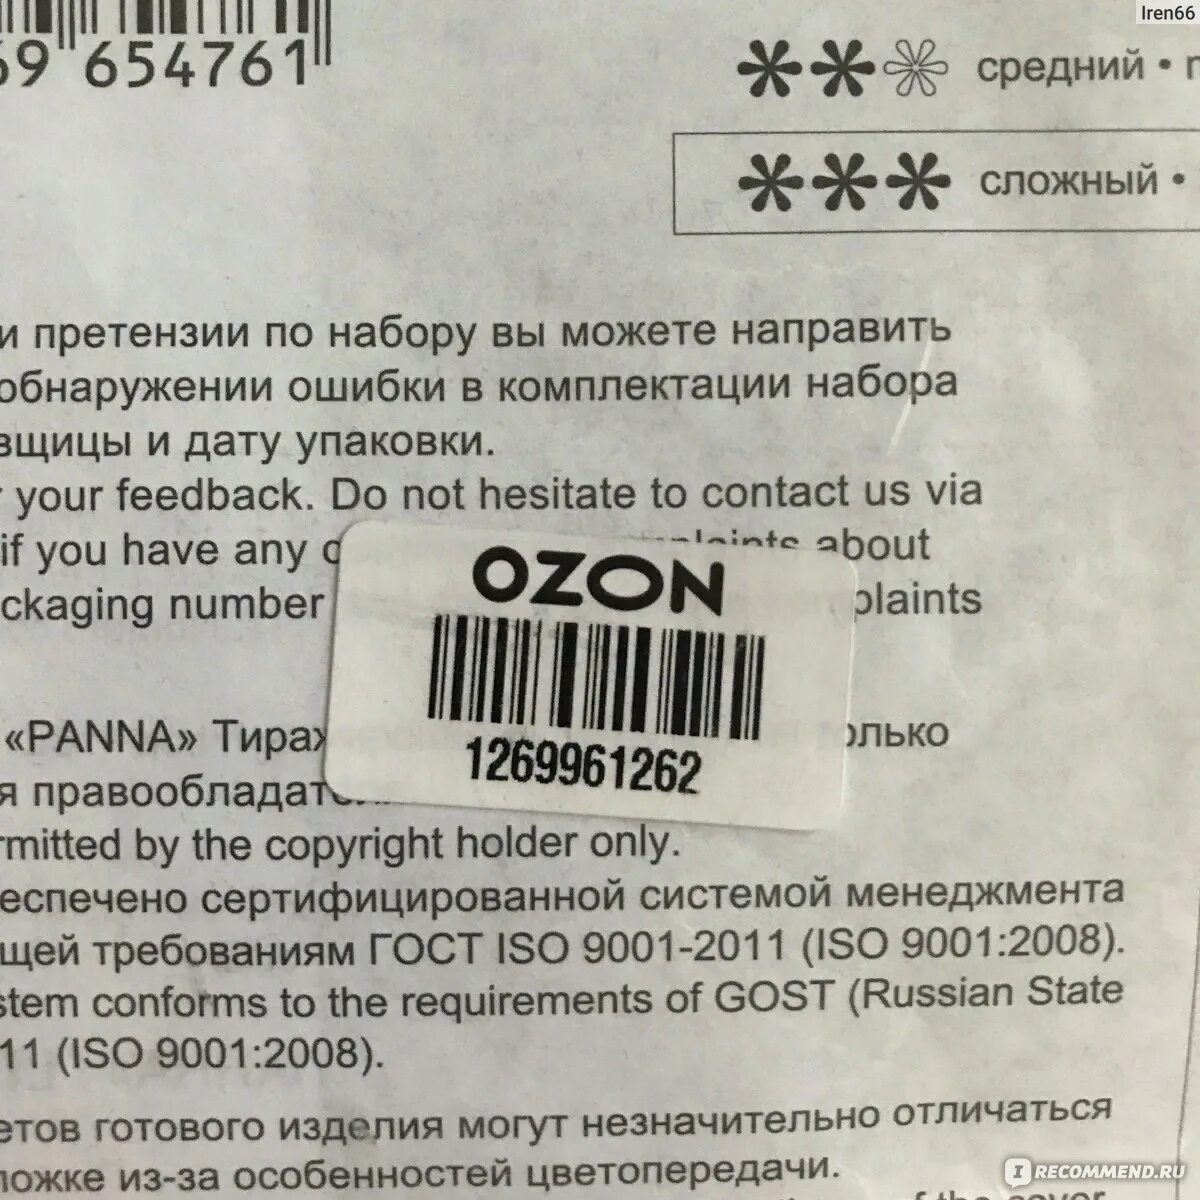 Штрих код озон как передать. Этикетка на товар для озона. Штрихкод Озон требования. OZON этикетка штрих код. Требования к этикетке Озон.